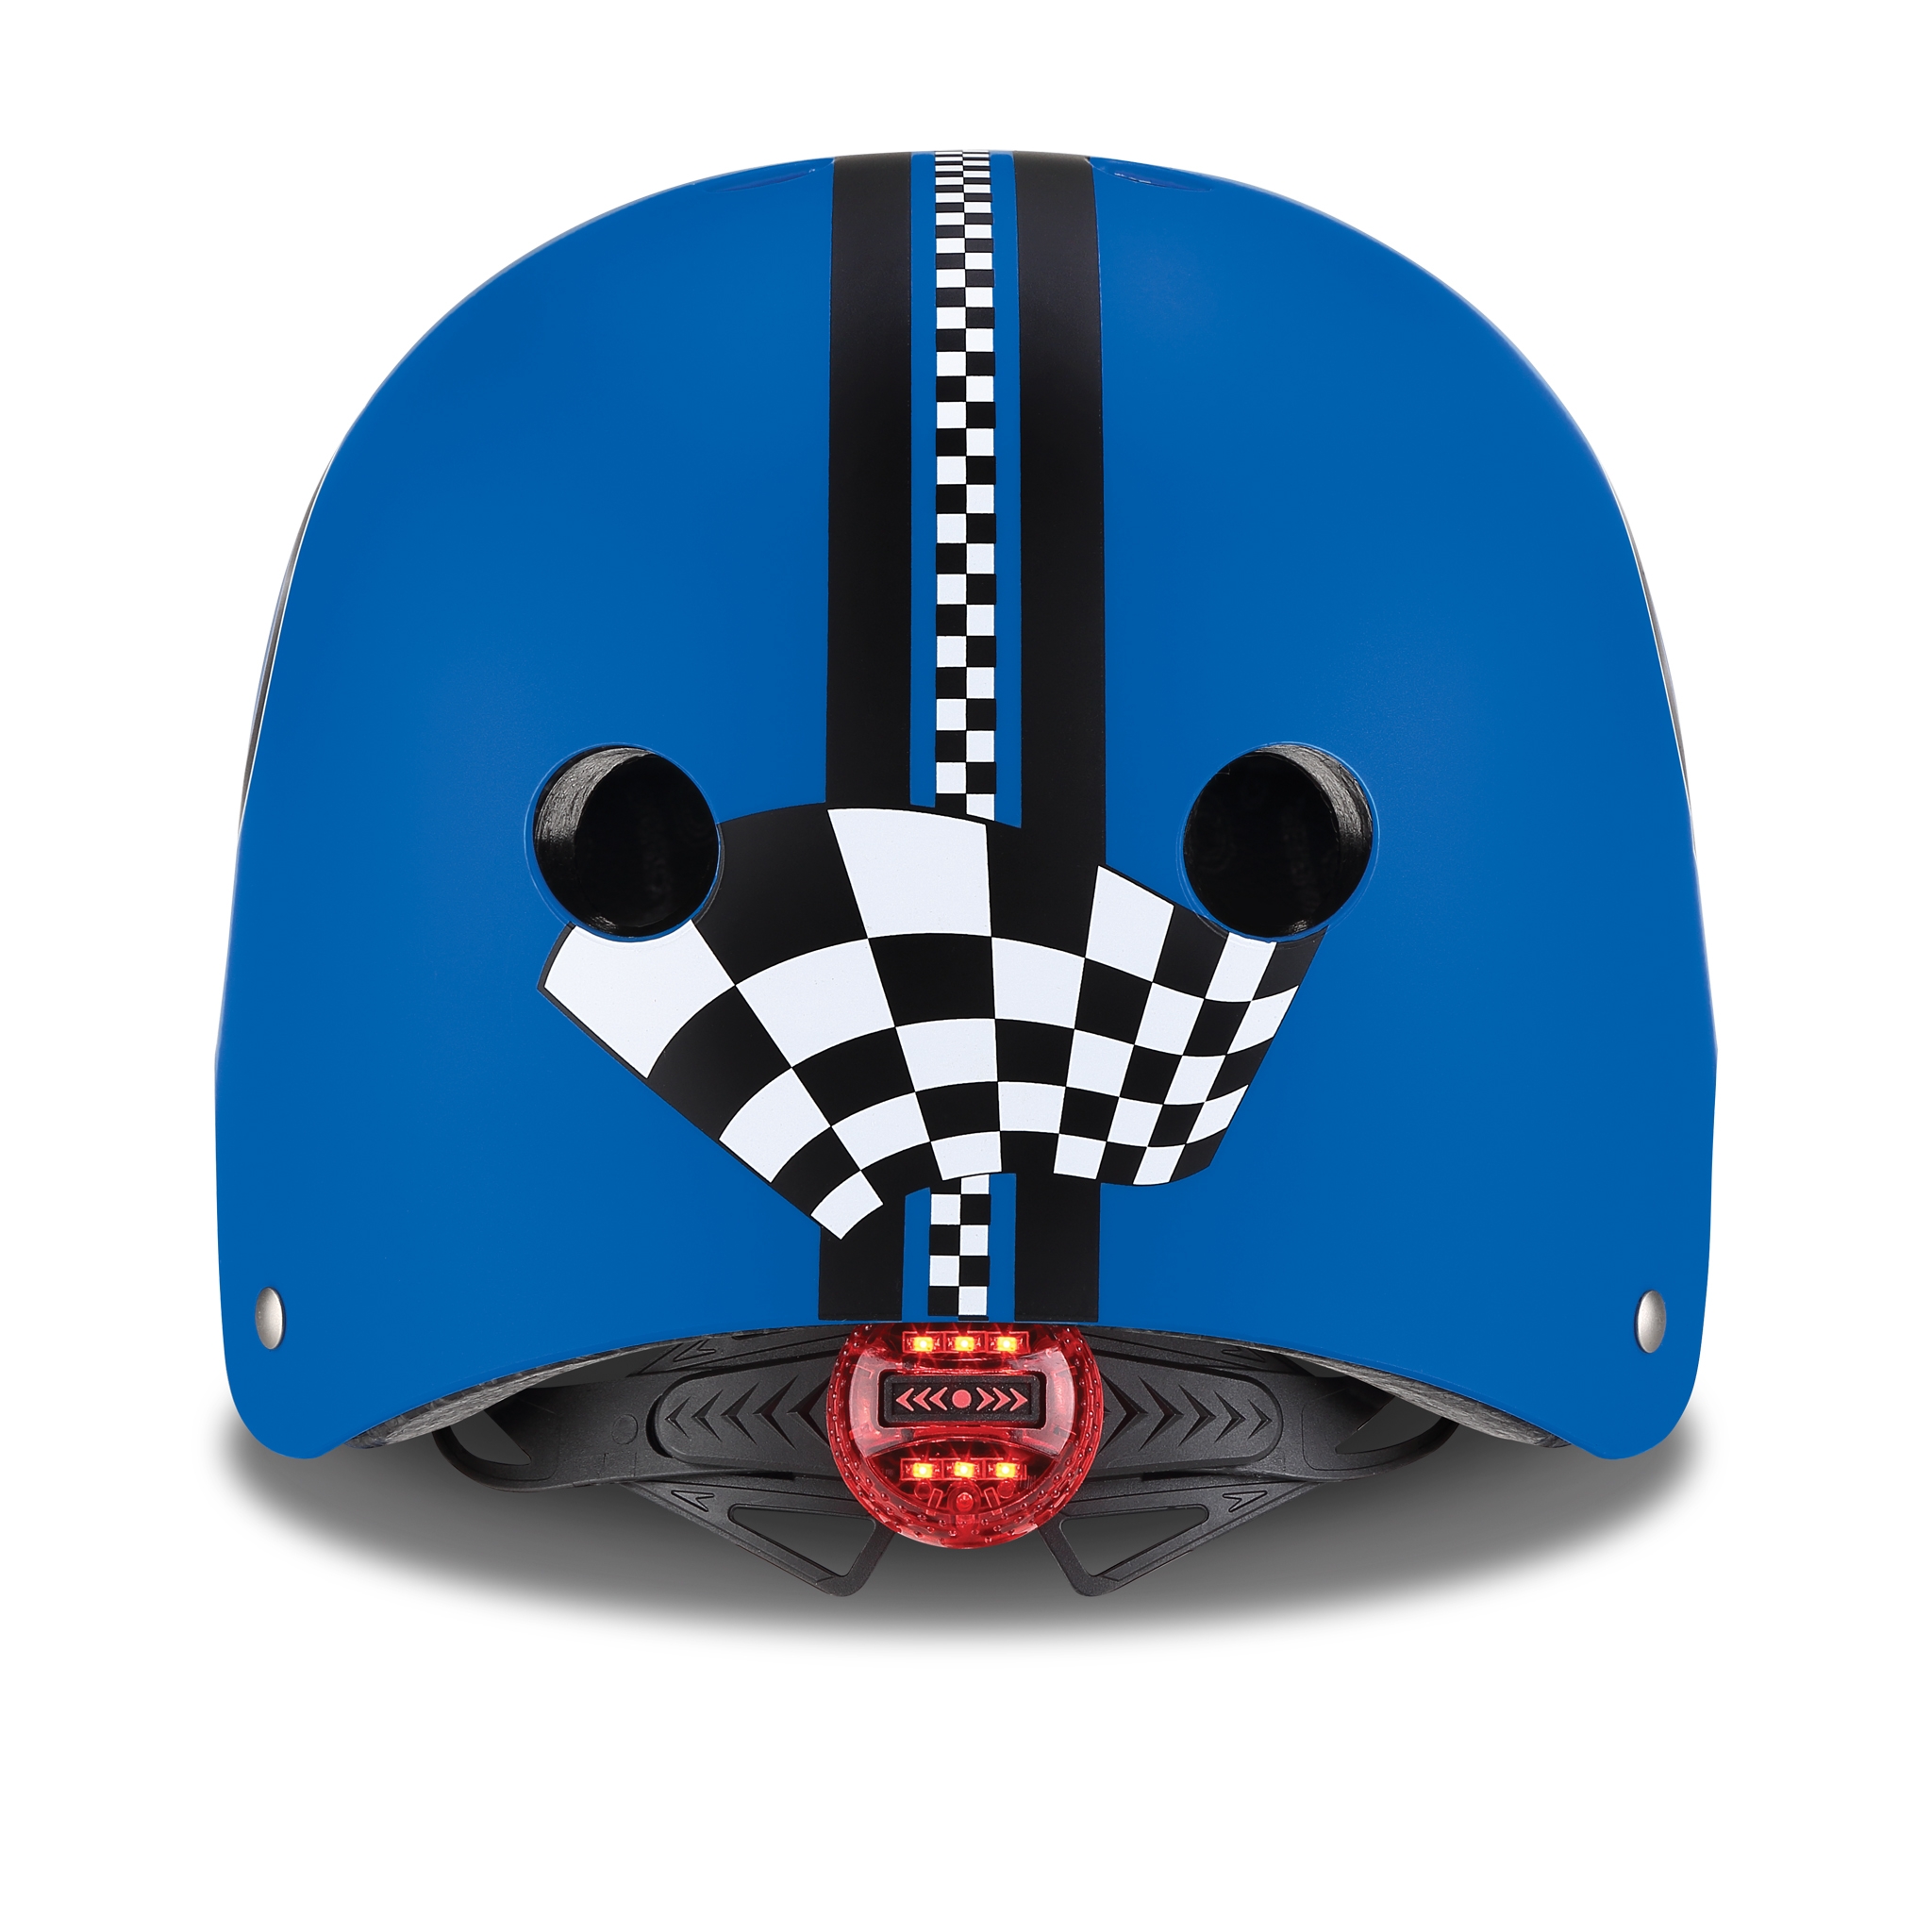 ELITE-helmets-scooter-helmets-for-kids-with-LED-lights-safe-helmet-for-kids-navy-blue 2